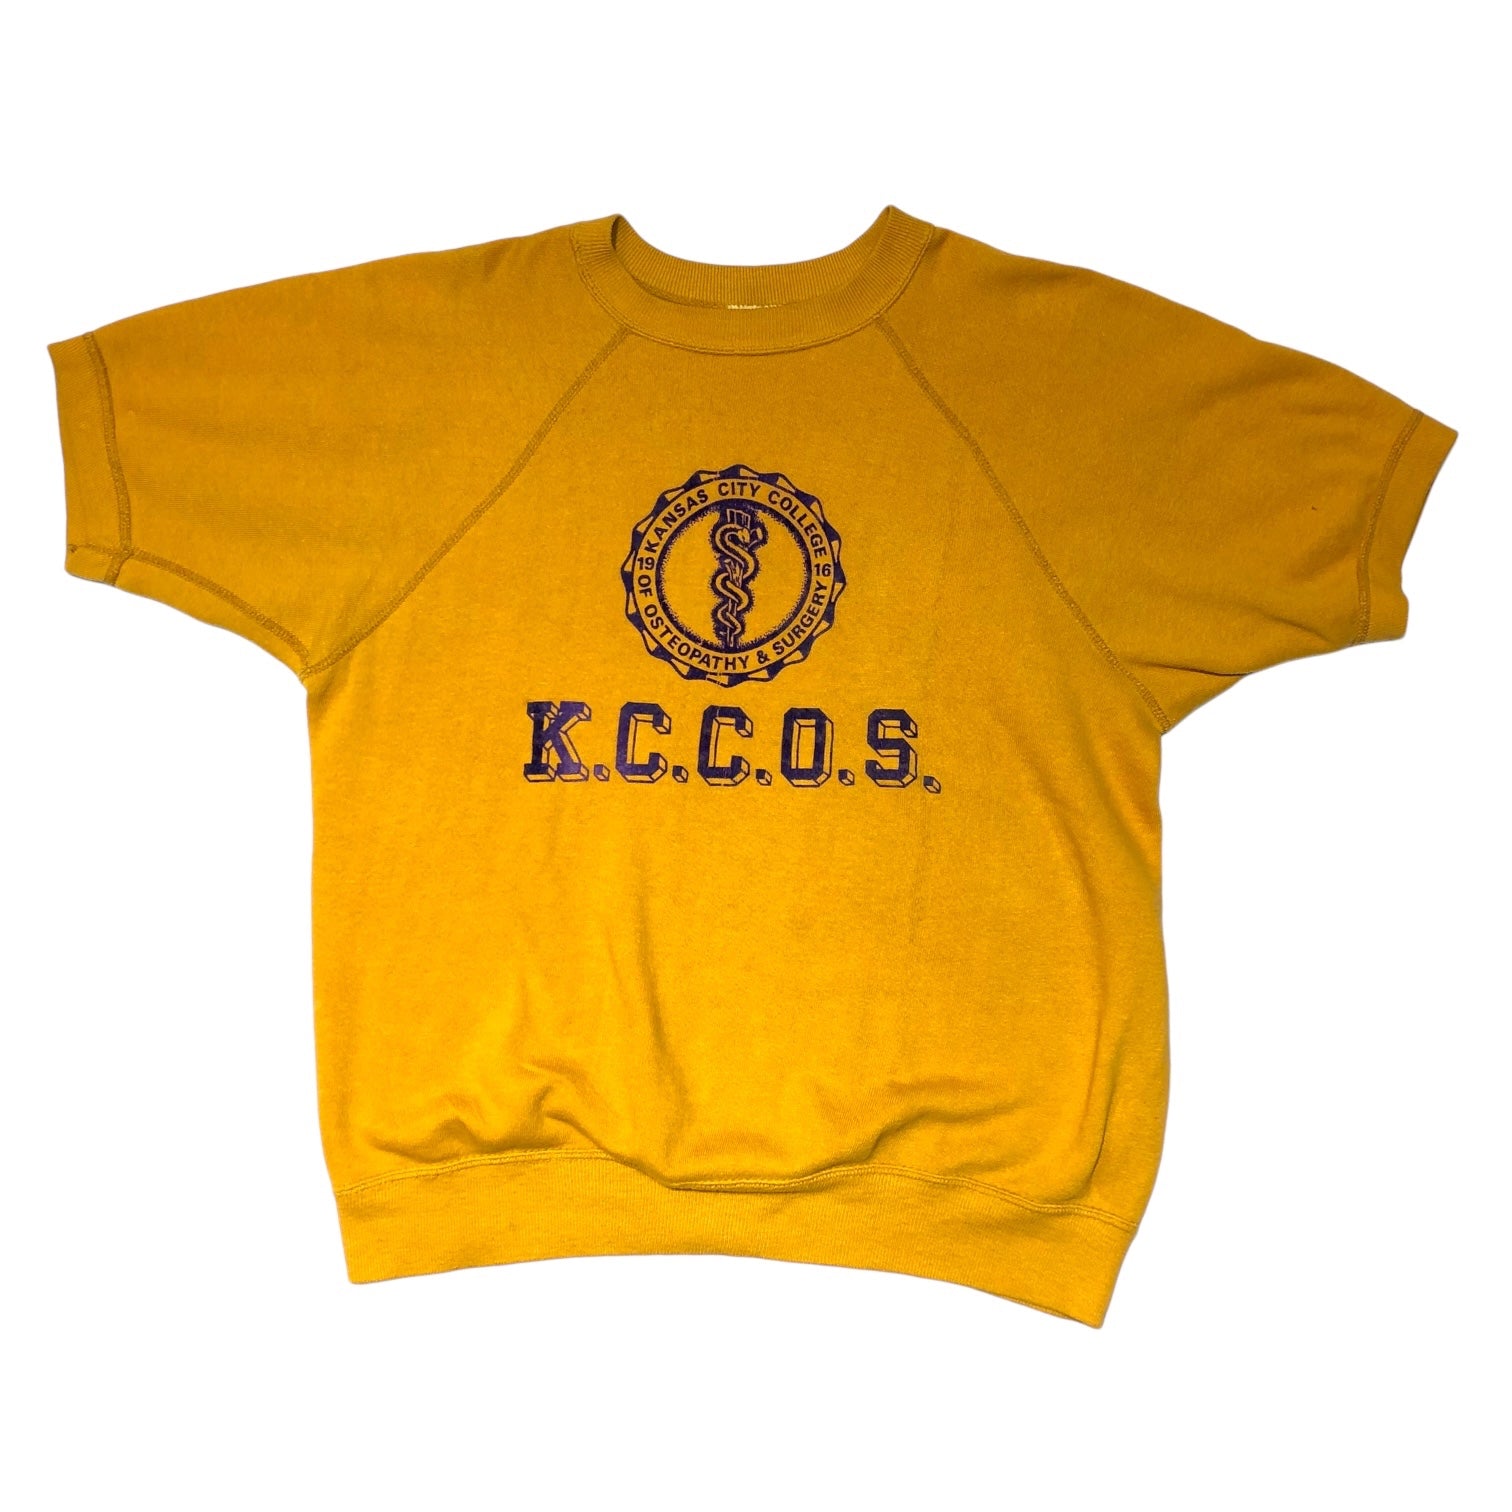 ARTEX(アルテックス アーテックス) 60's "KANSAS CITY COLLEGE" S/S sweat shirt カレッジ プリント 半袖 スウェット M イエロー 60年代 ヴィンテージ